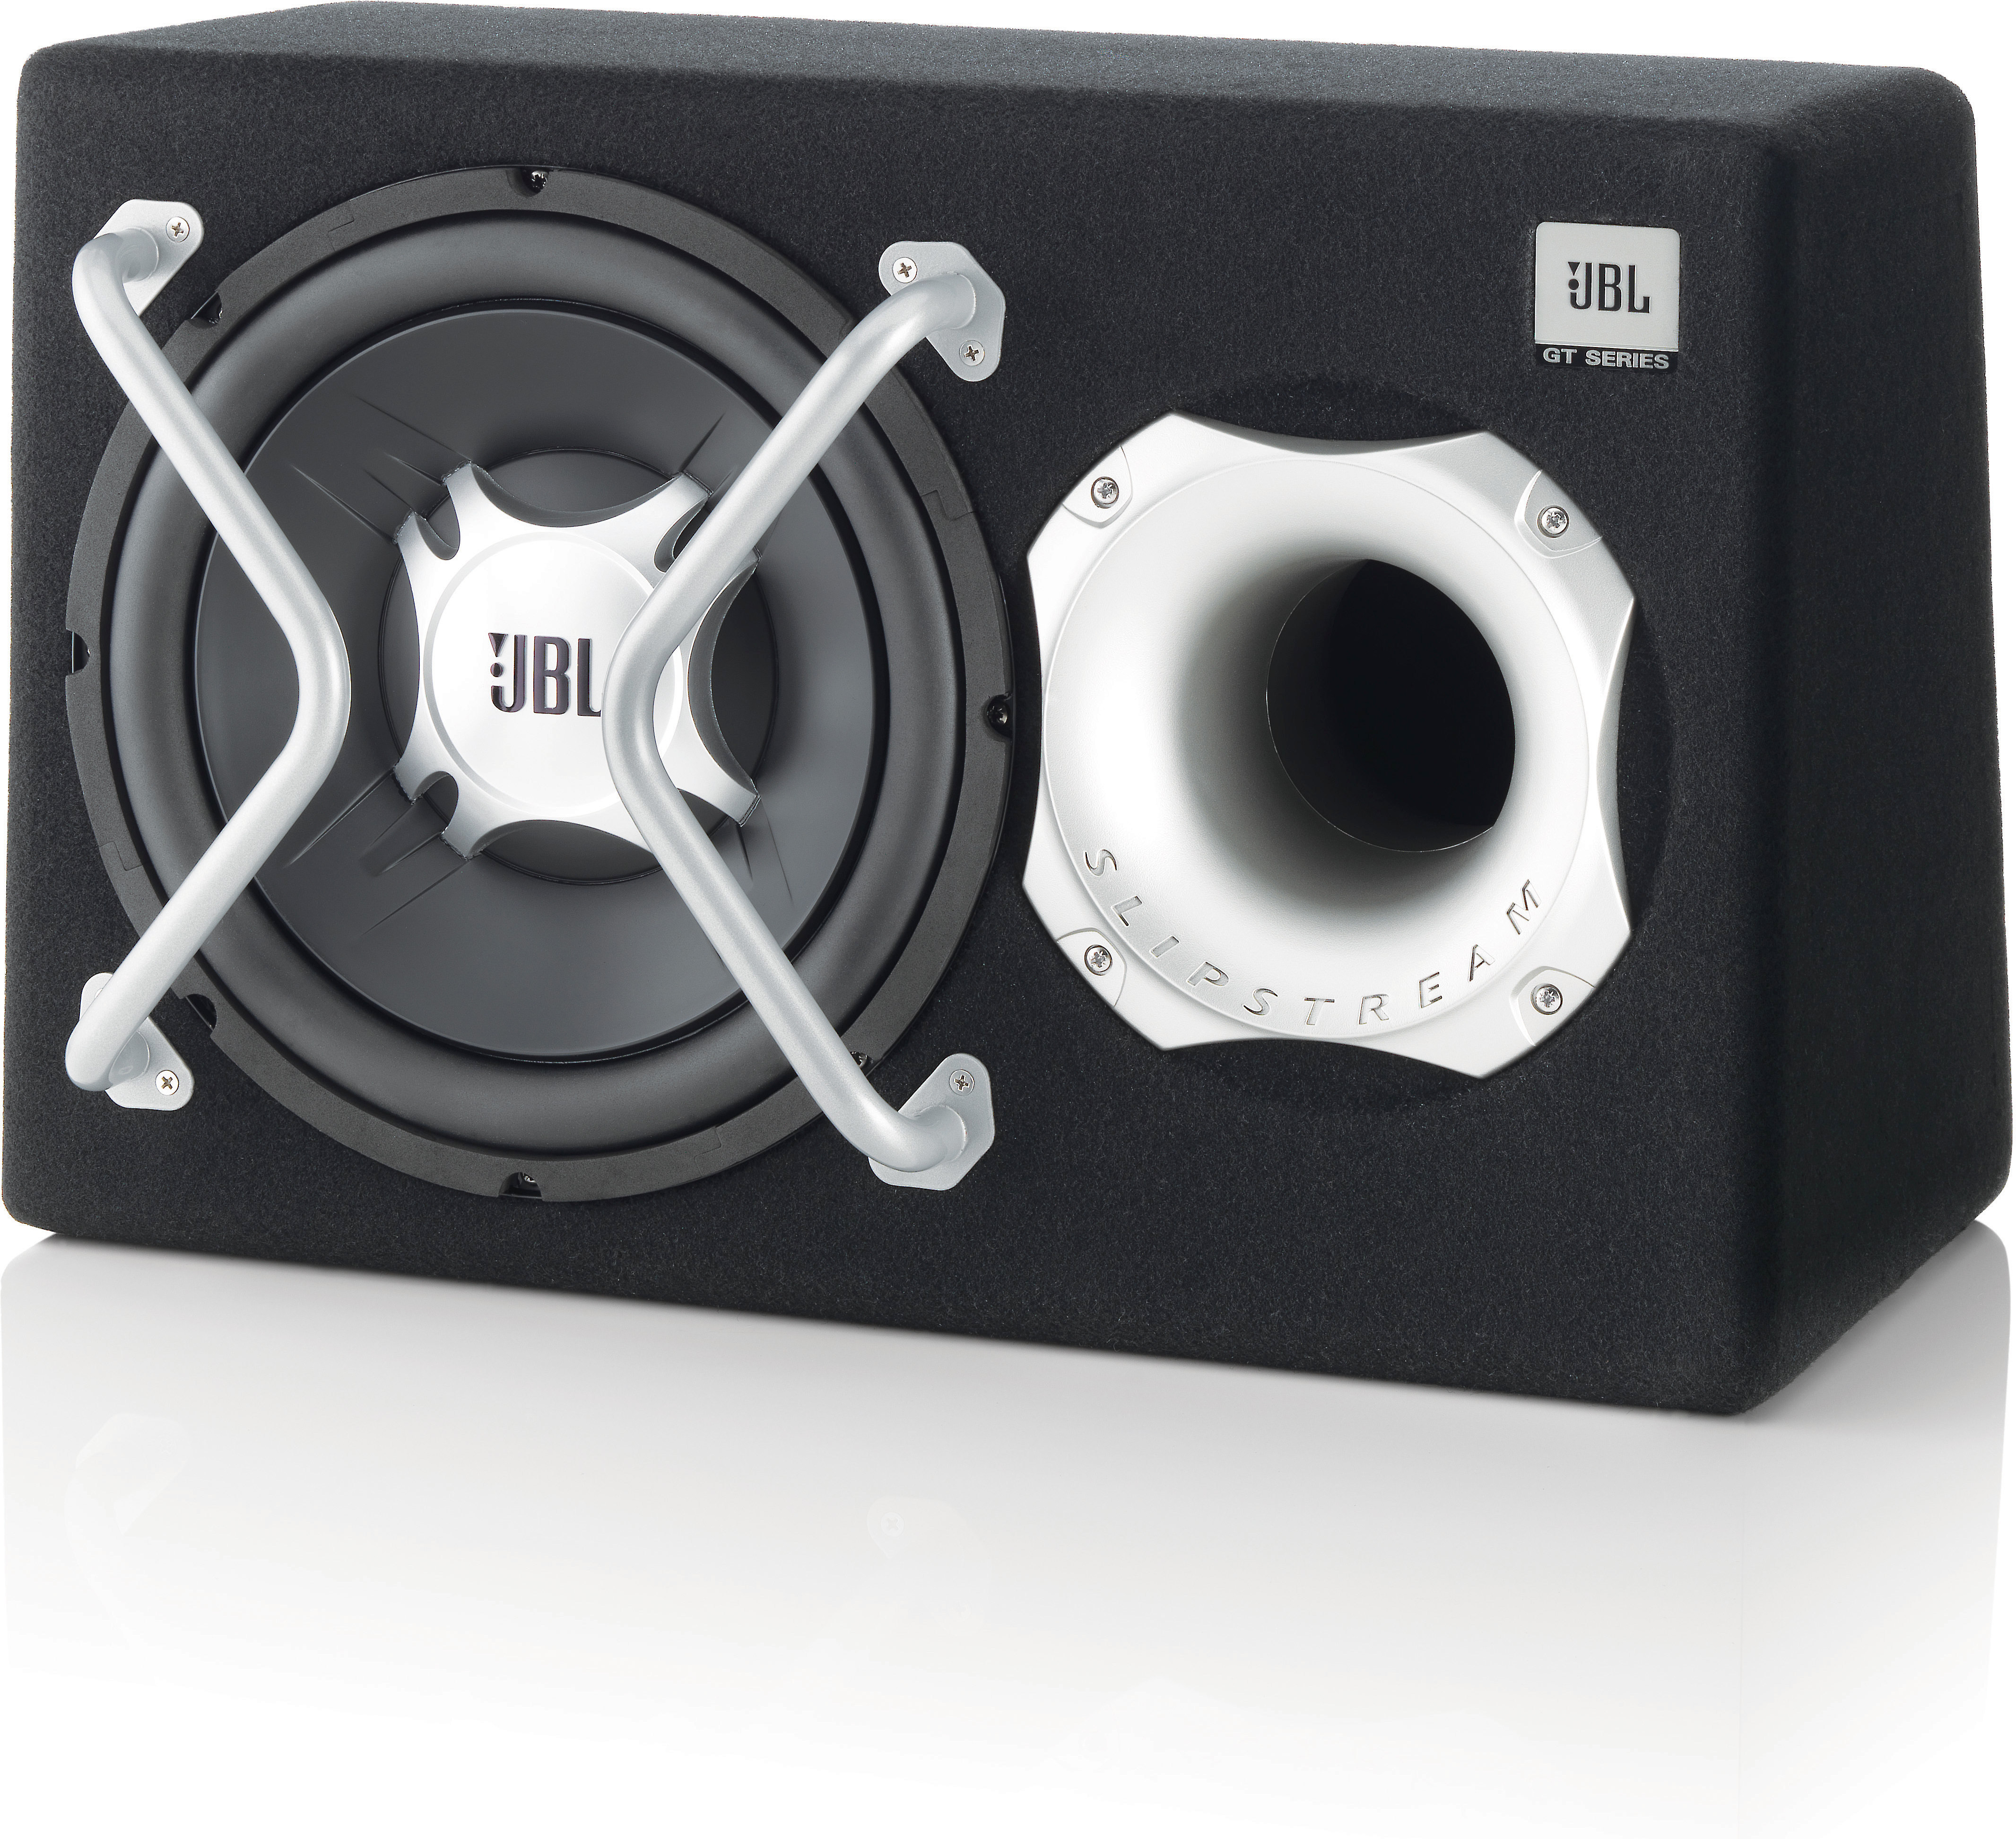 jbl speakers 450 watts price